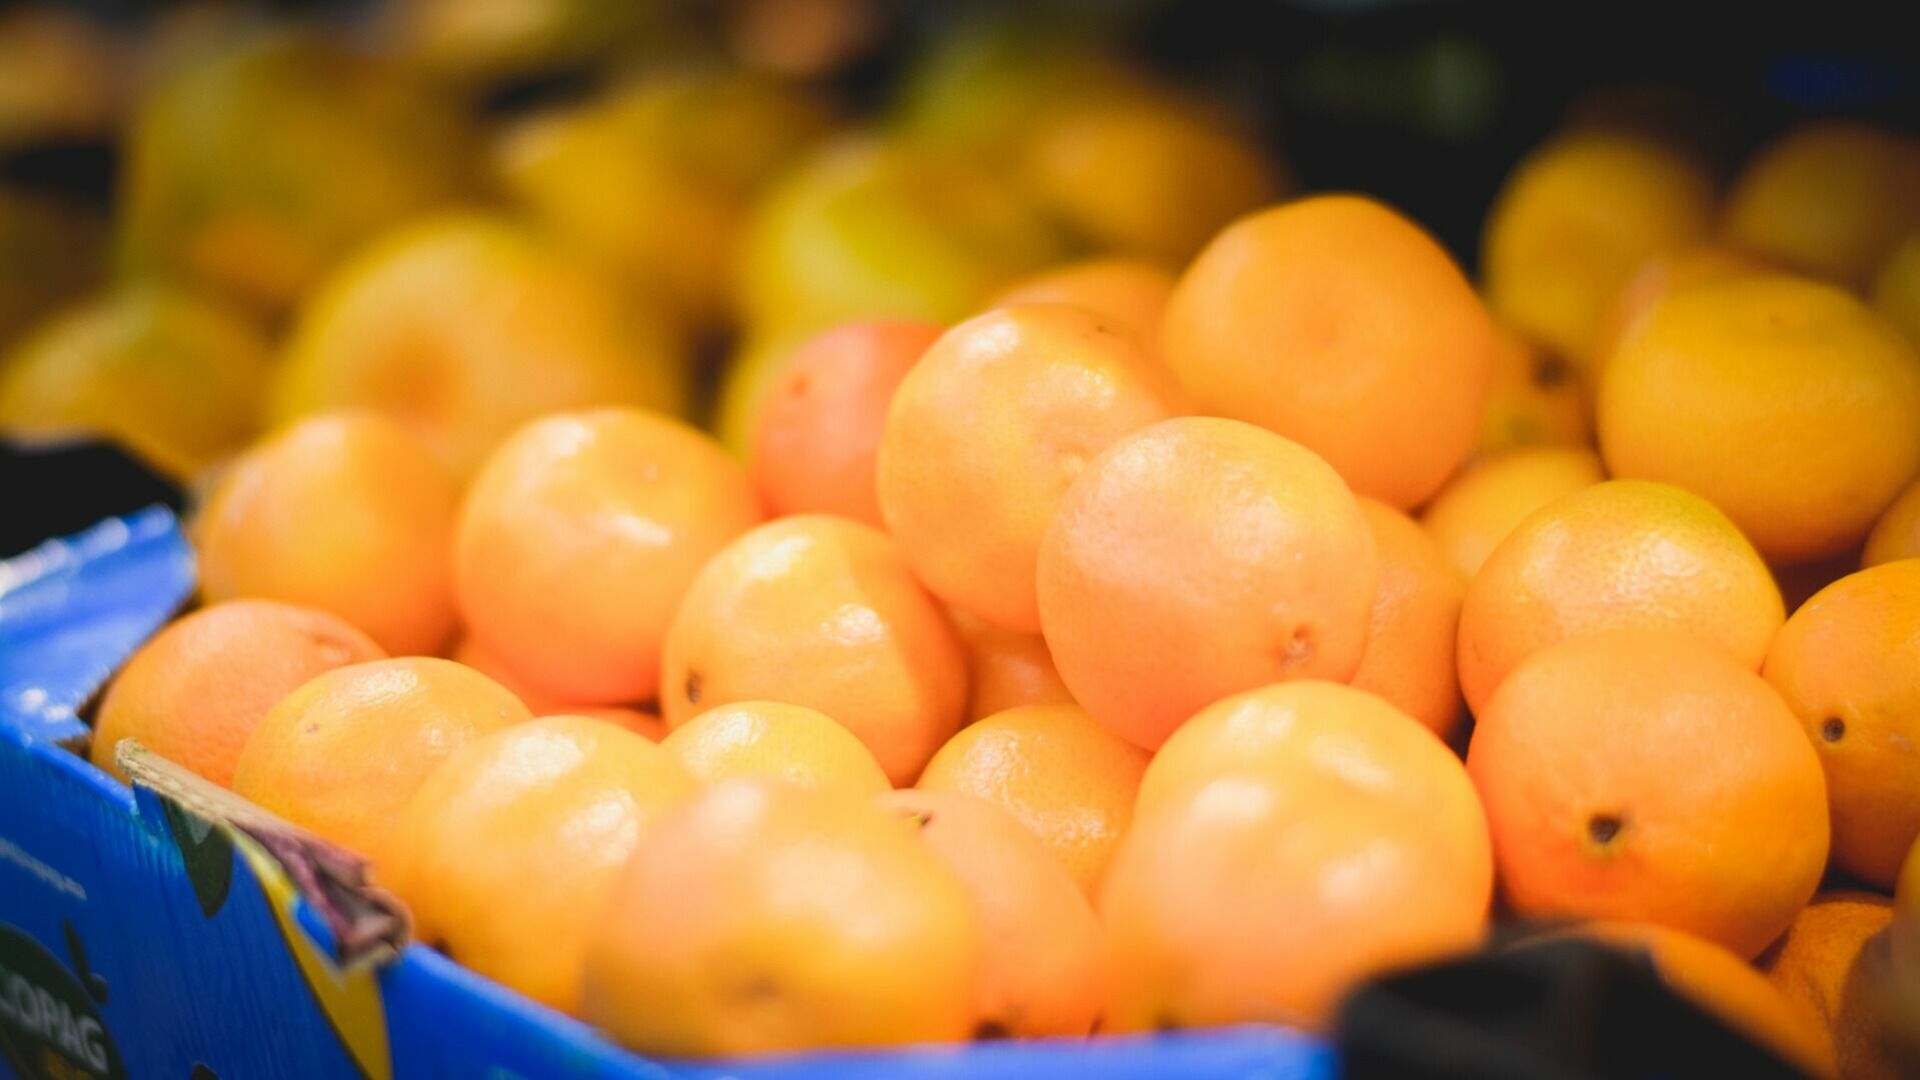 В мандаринах нескольких торговых сетей нашли следы пестицидов